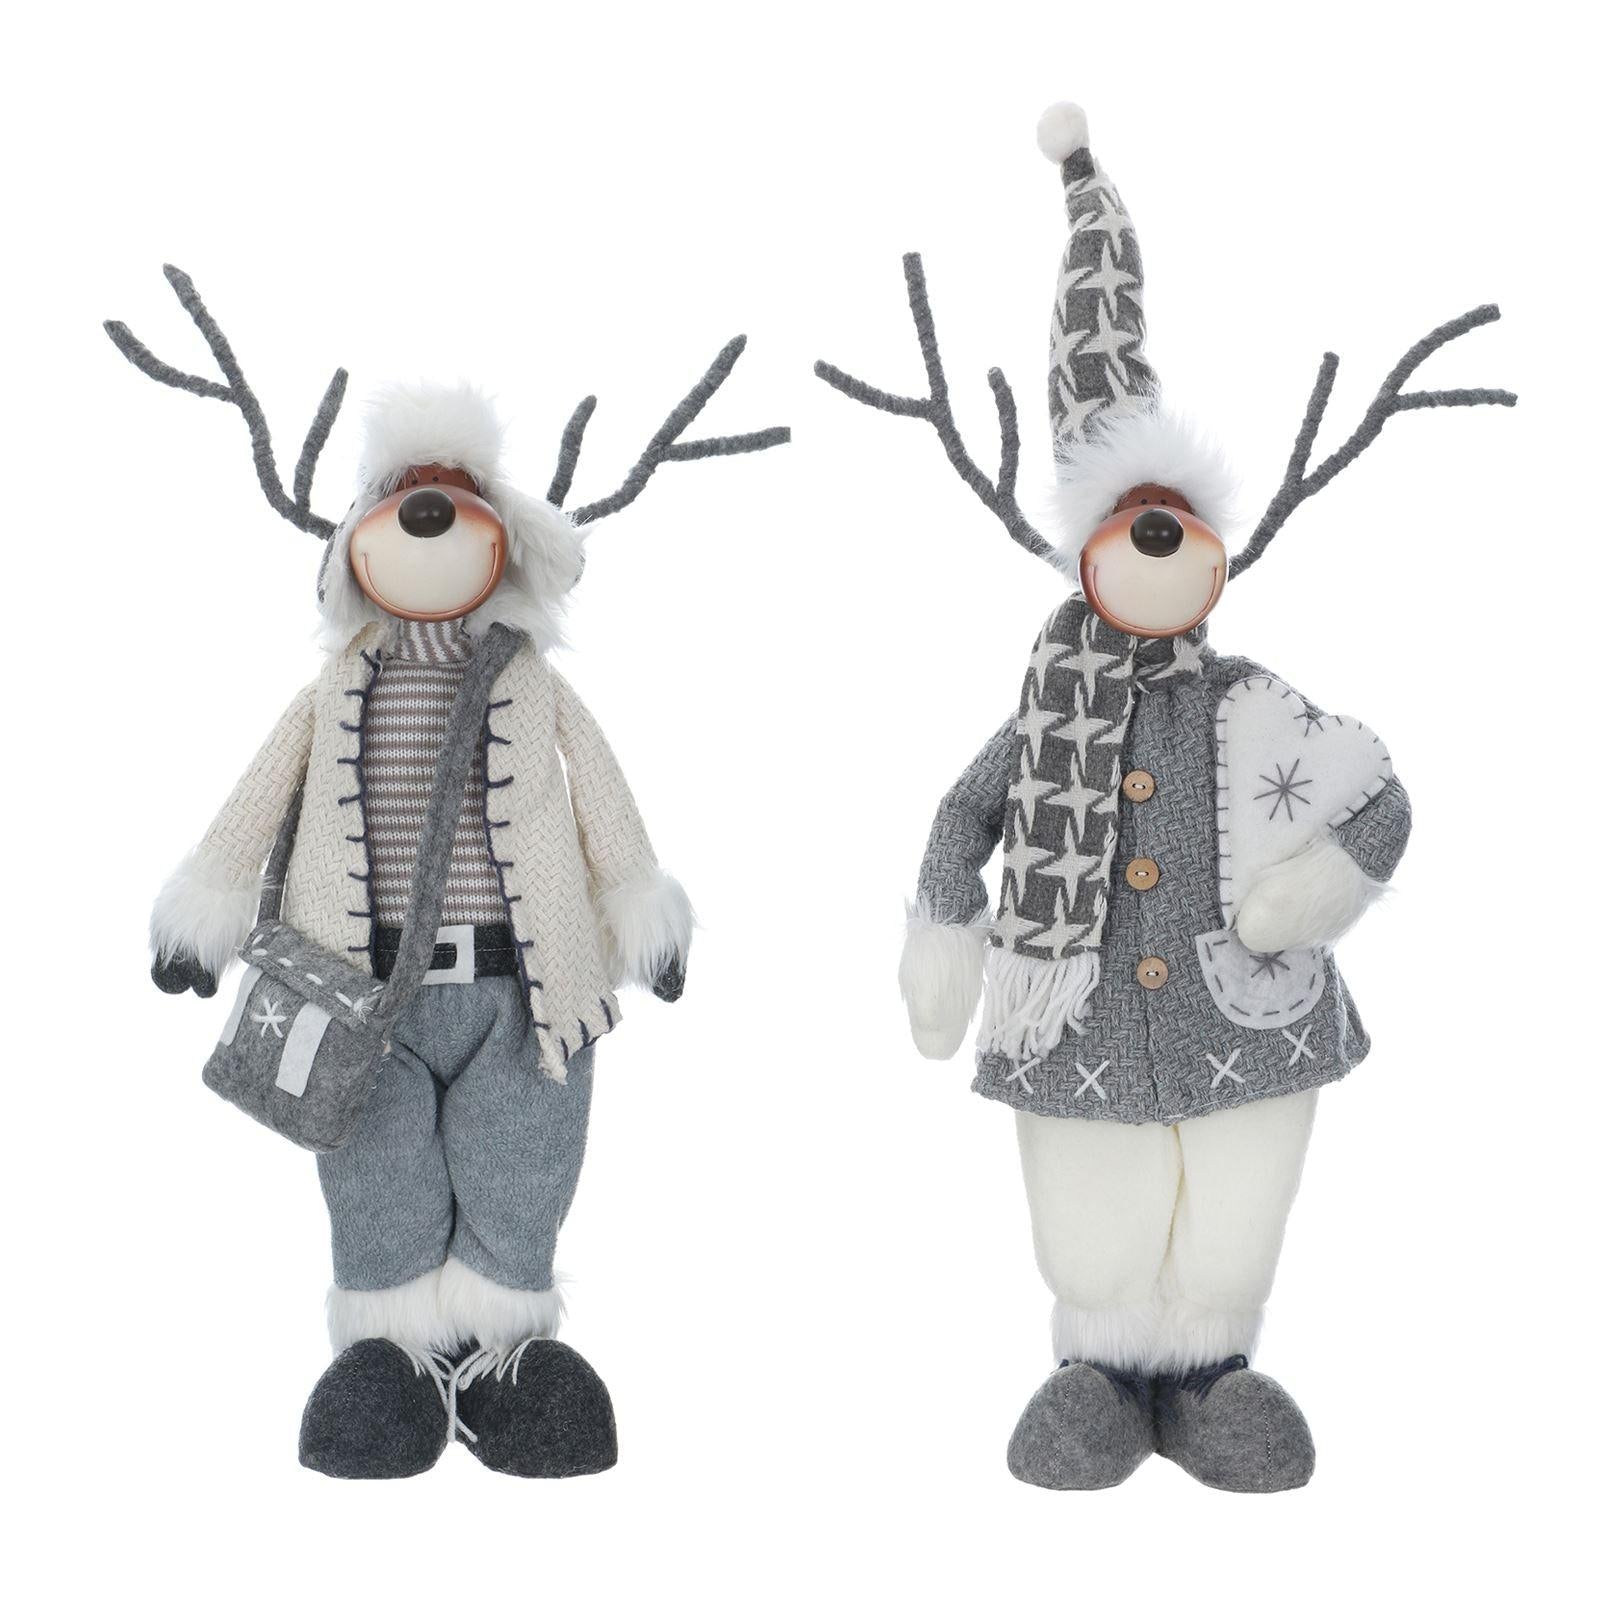 Mr Crimbo 19" Reindeer Figure Christmas Scandi Style Grey White - MrCrimbo.co.uk -XS5738 - Reindeer With Bag -christmas